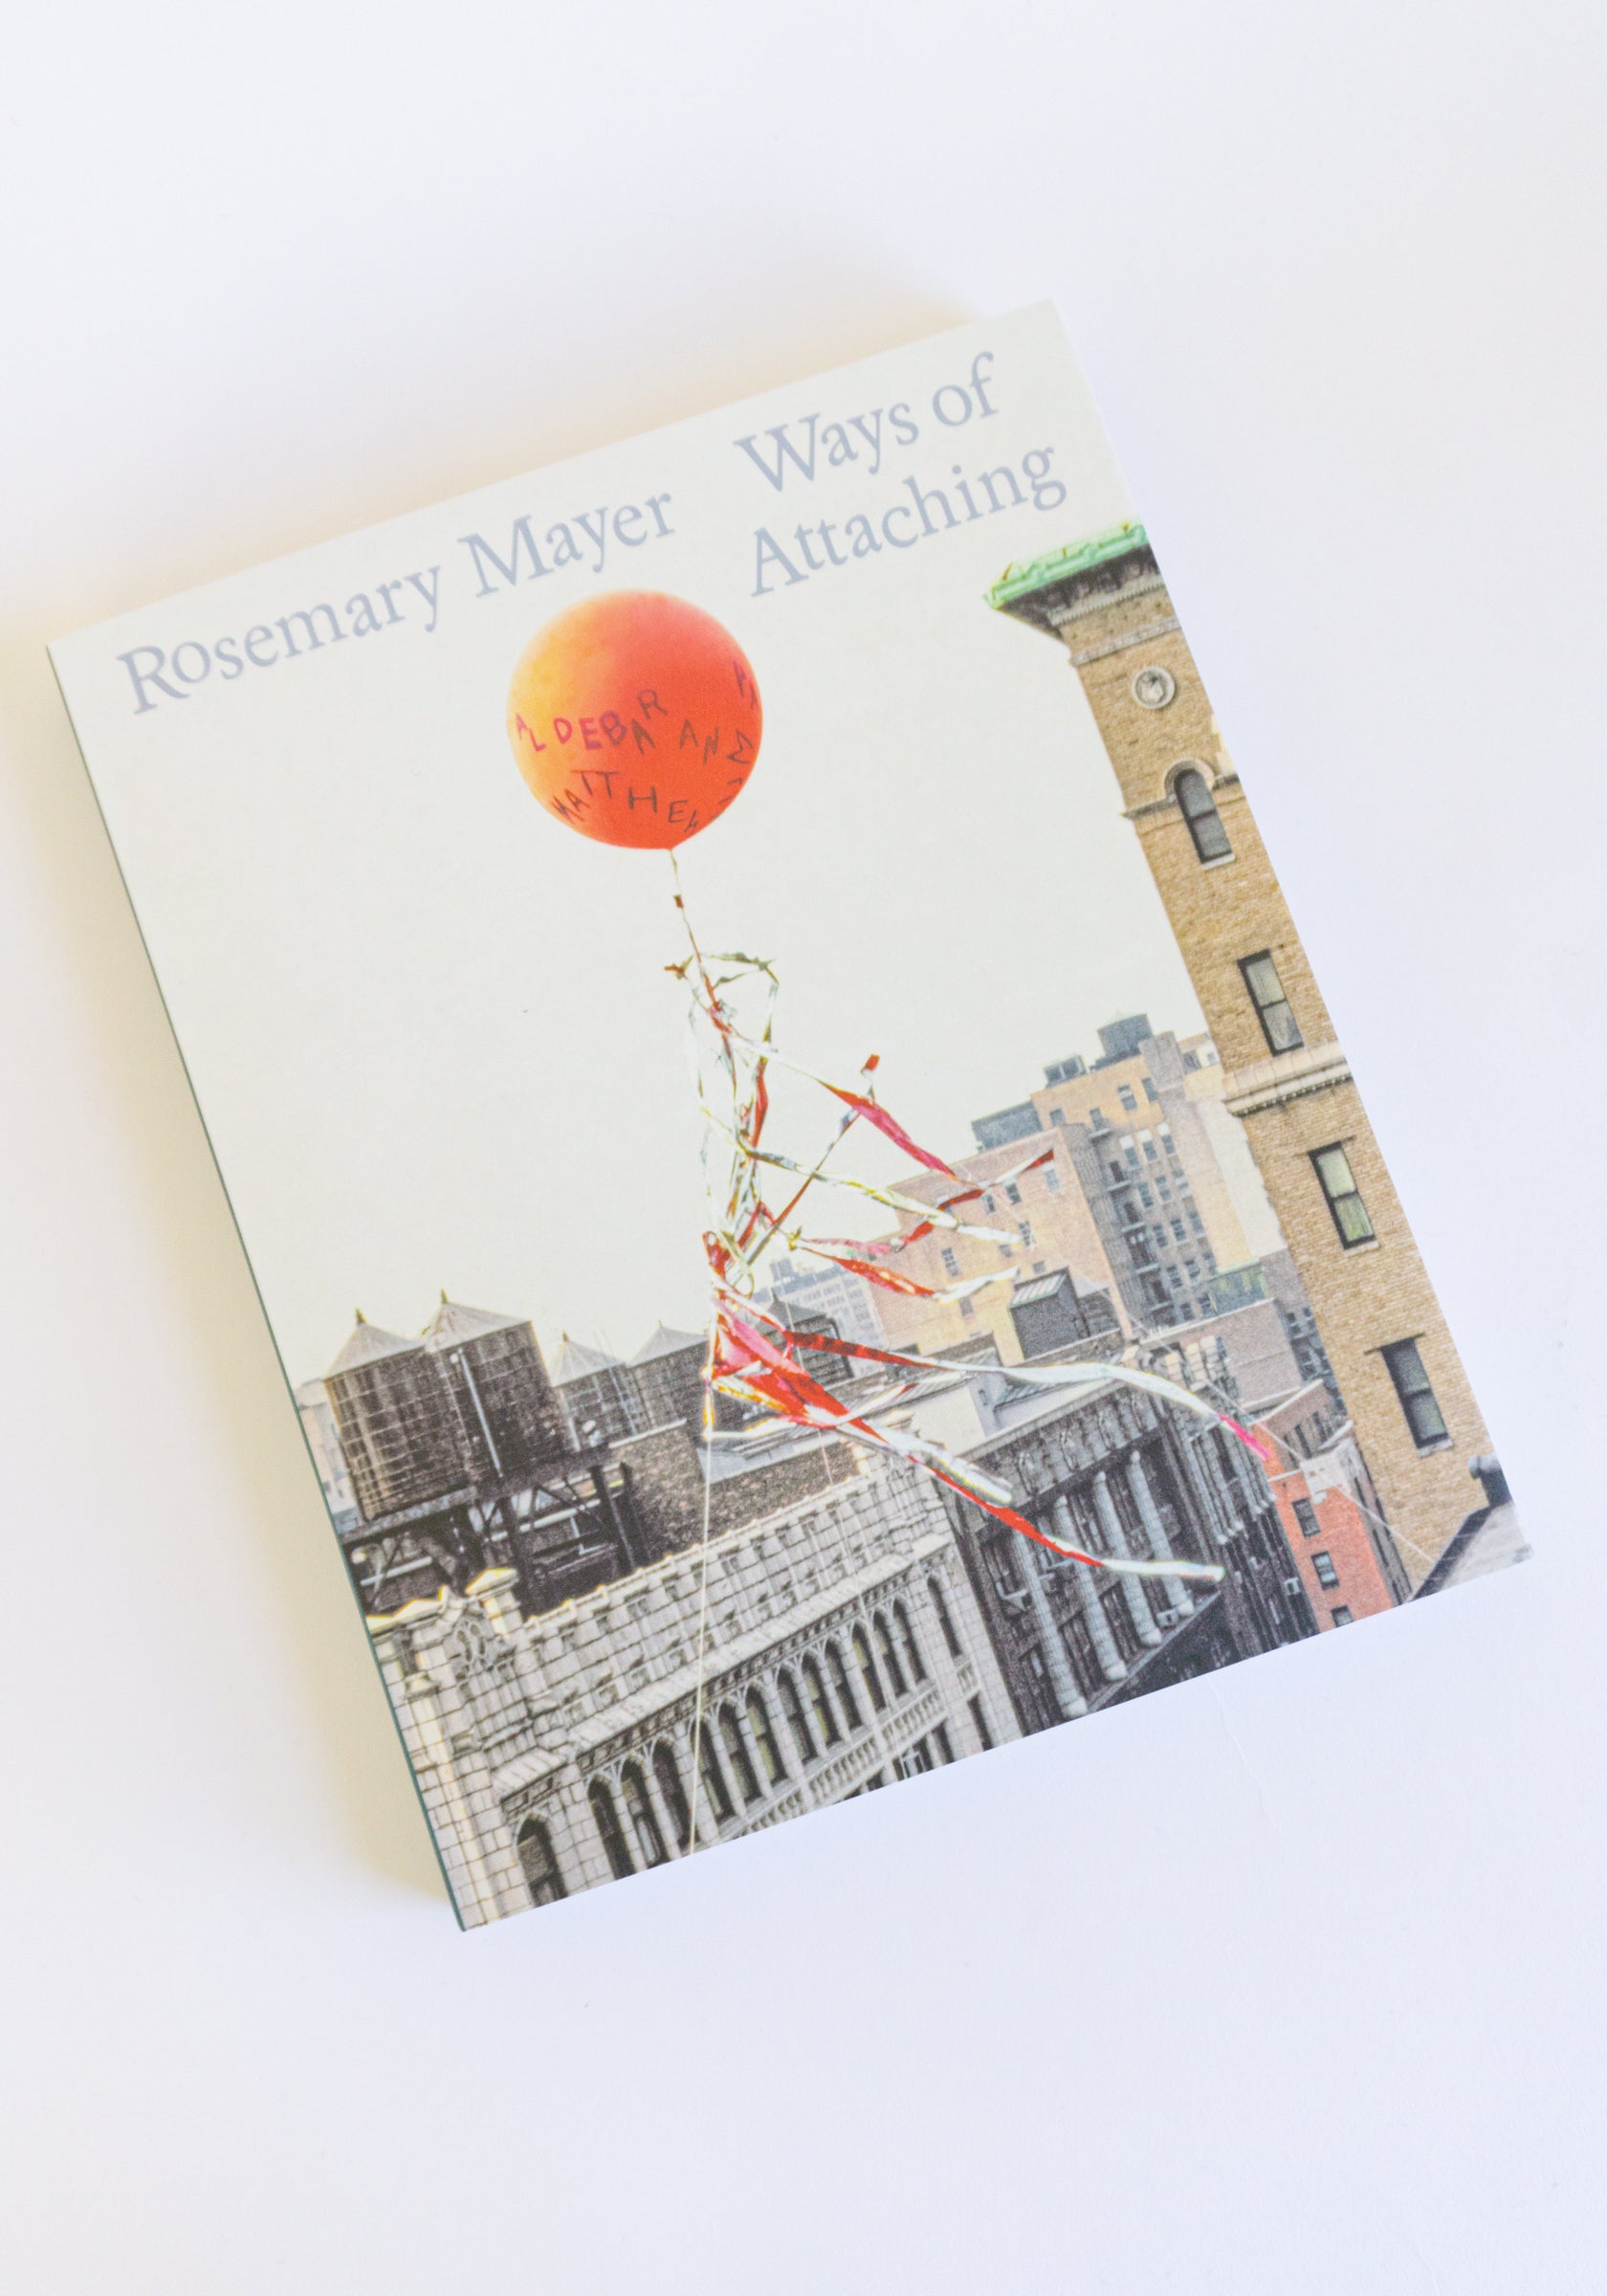 Rosemary Mayer: Ways of Attaching